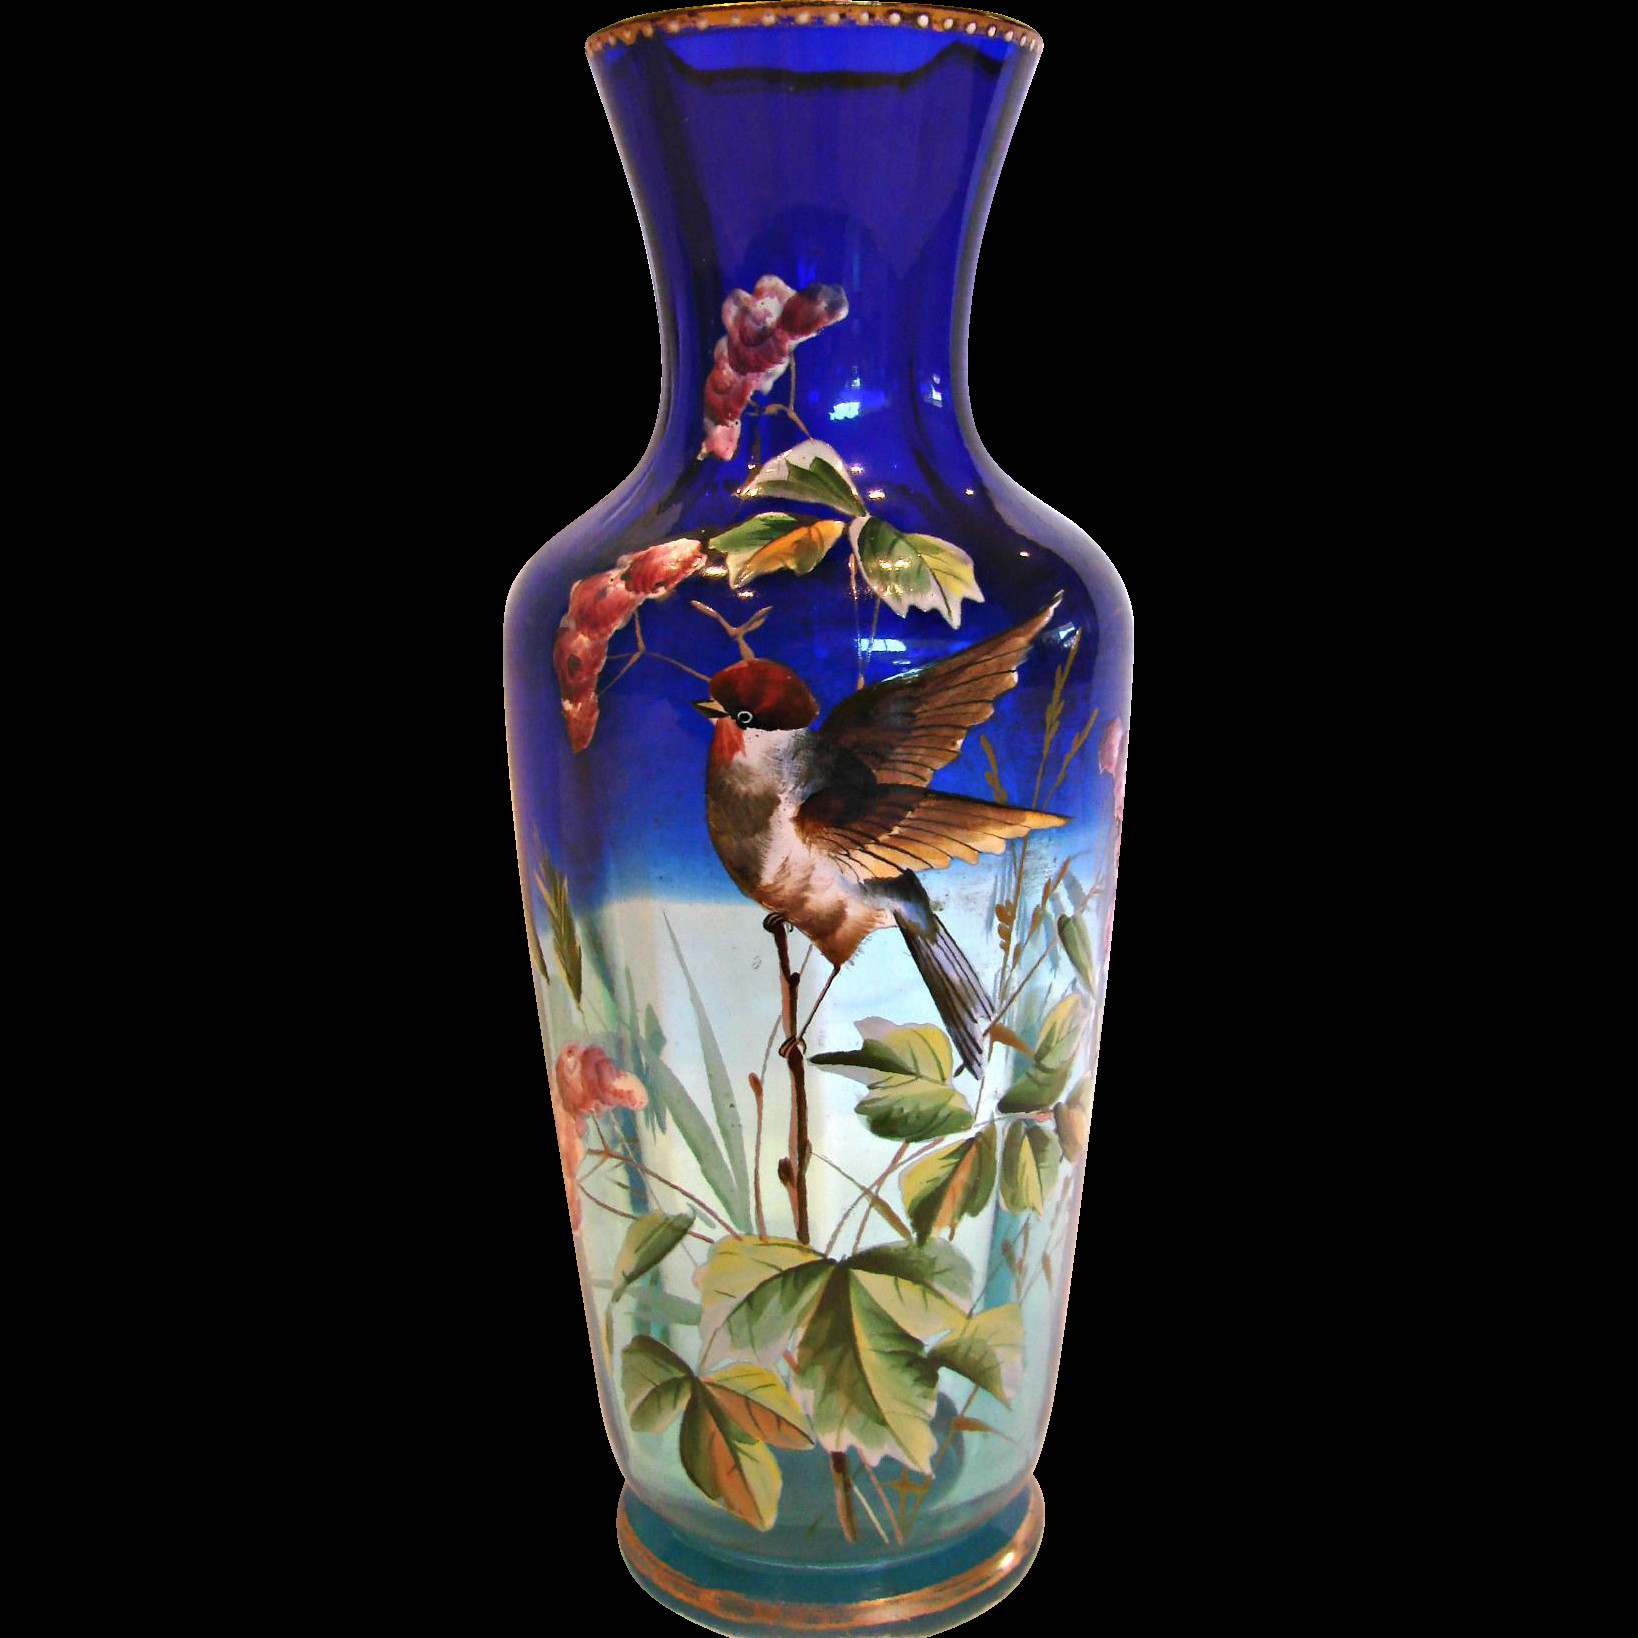 19 Lovely Antique Chinese Glass Vase 2024 free download antique chinese glass vase of bohemian shaded blue clear art glass vase enameled bird c 1880 inside bohemian shaded blue clear art glass vase enameled bird c 1880